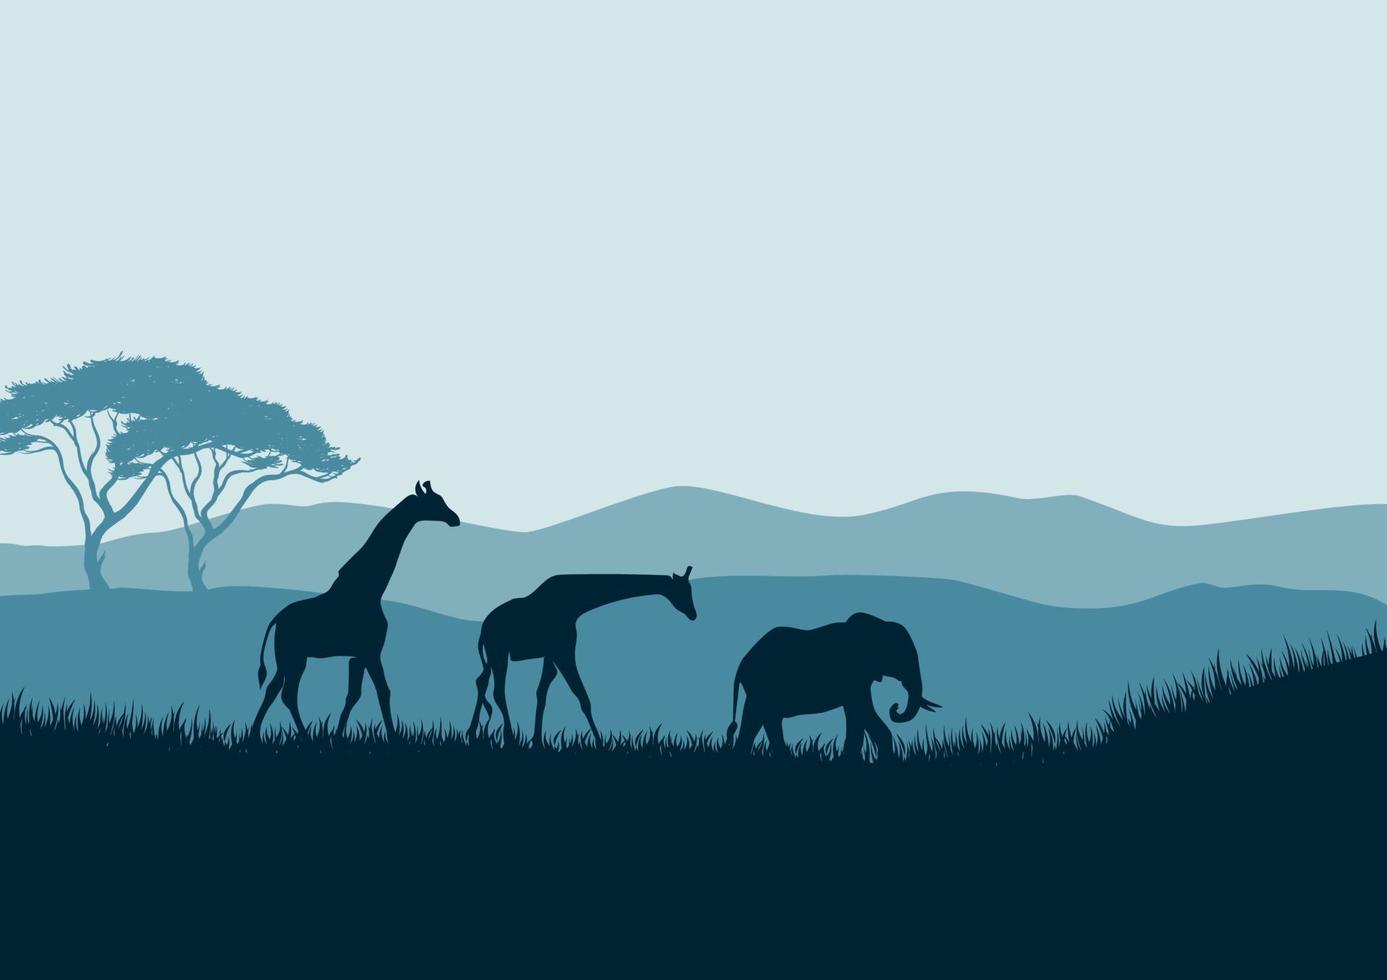 paisaje de sabana africana con siluetas de jirafas y elefantes ilustración de fondo vectorial vector